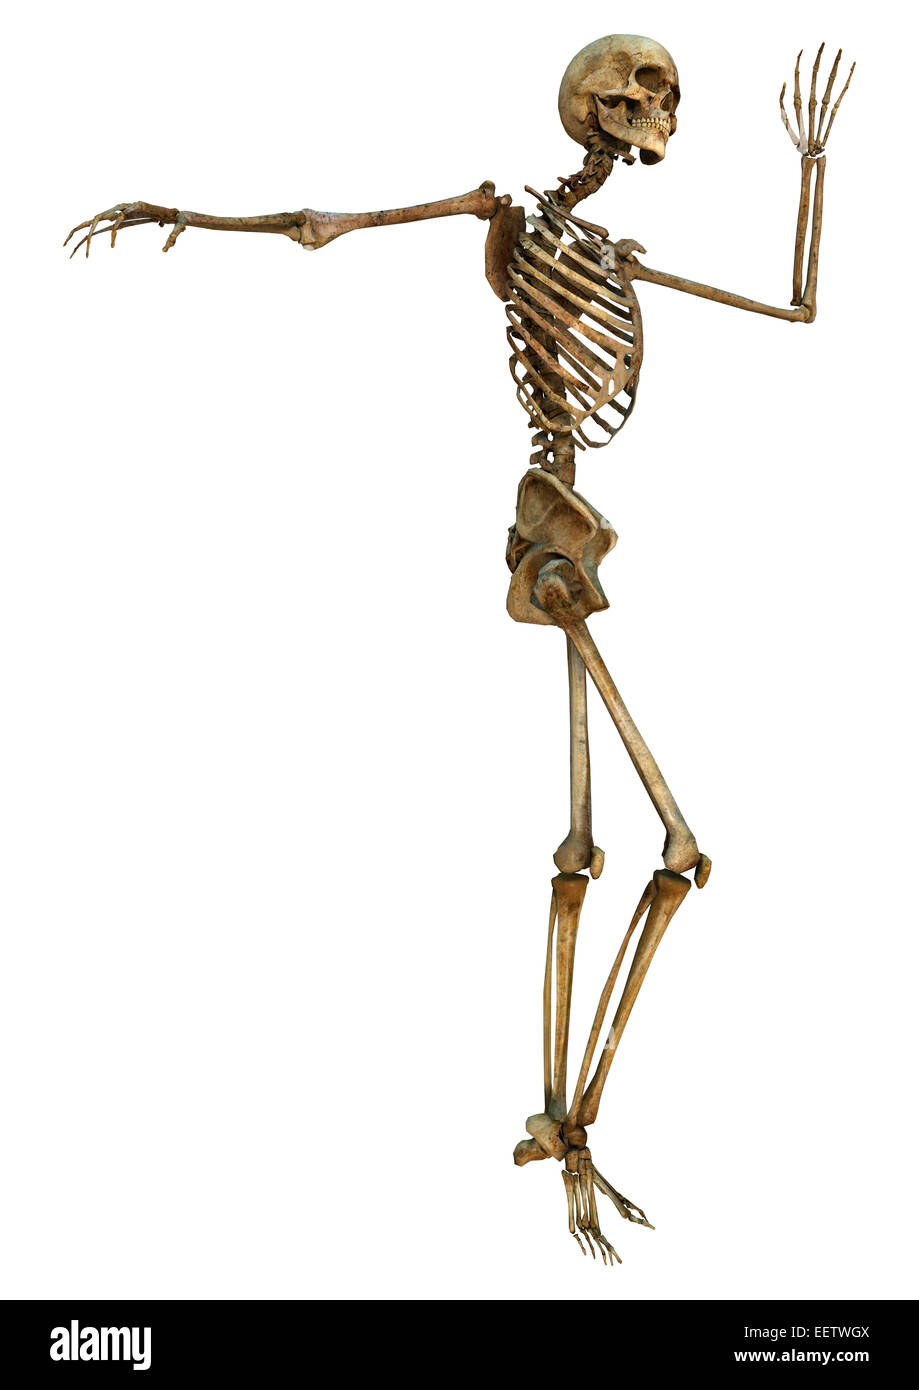 Numérique 3D render of a human skeleton danse isolé sur fond blanc Banque D'Images